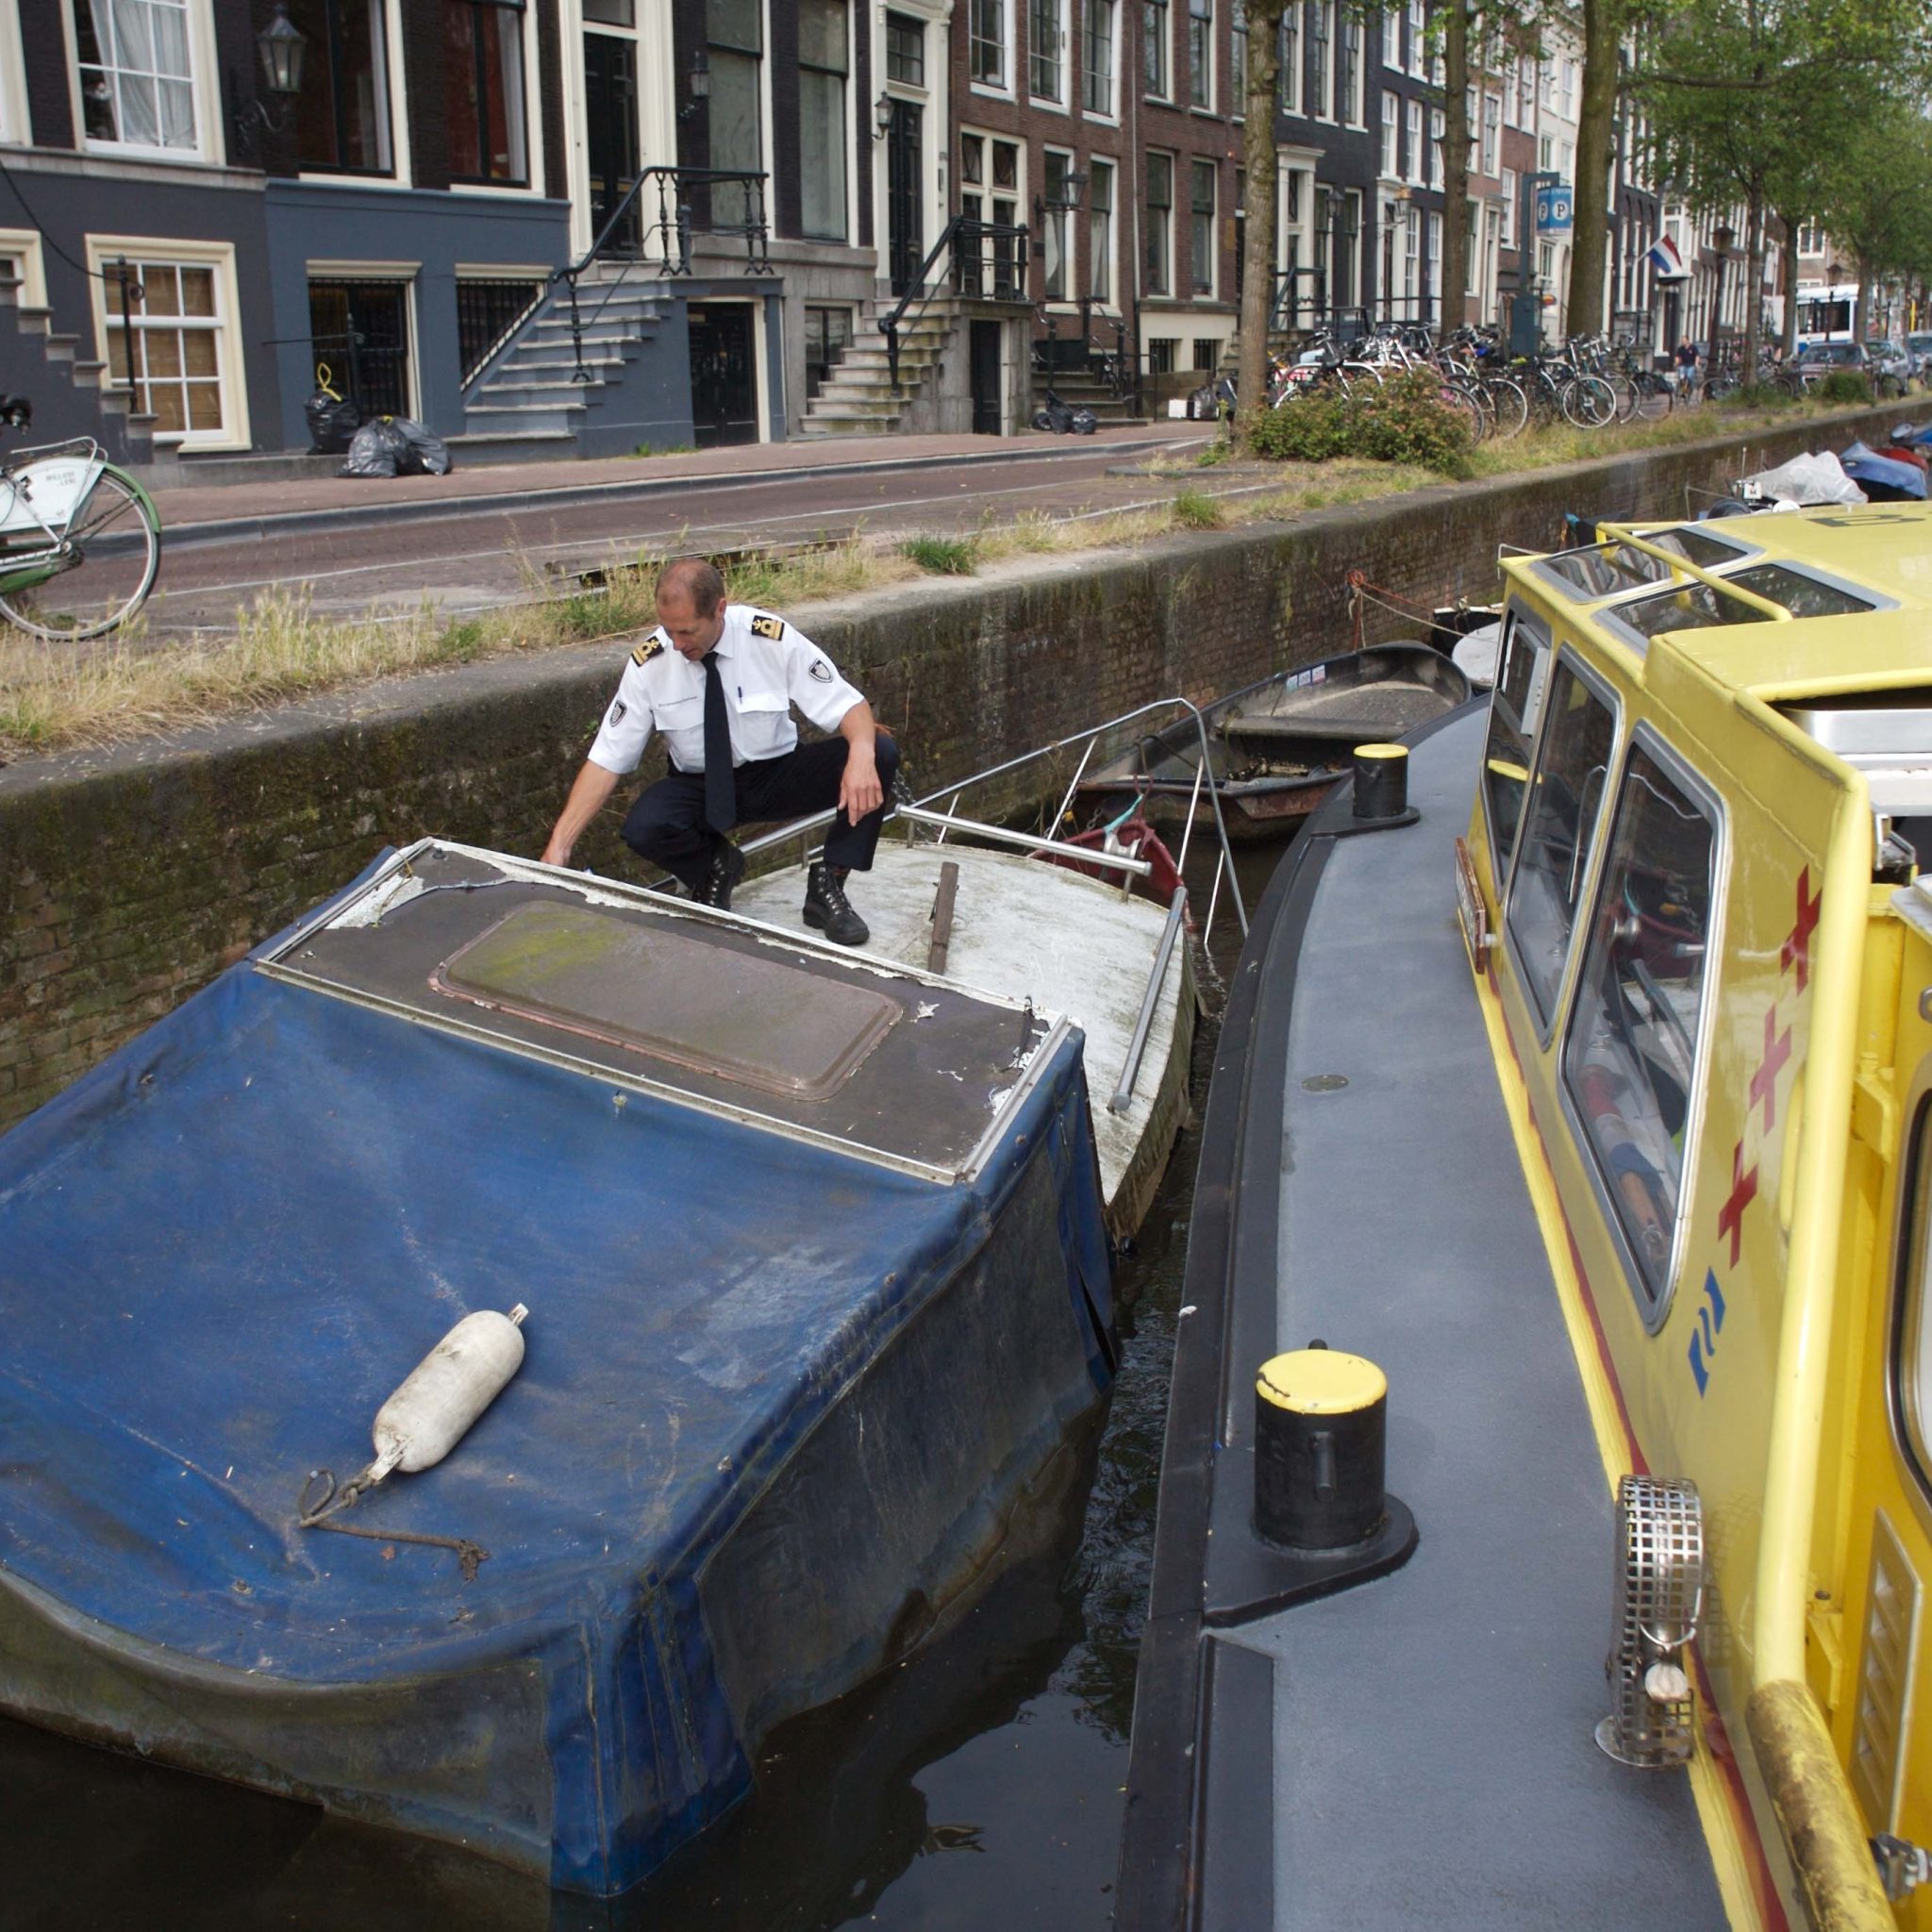 Aanpakken illegale rondvaart in Amsterdam niet eenvoudig